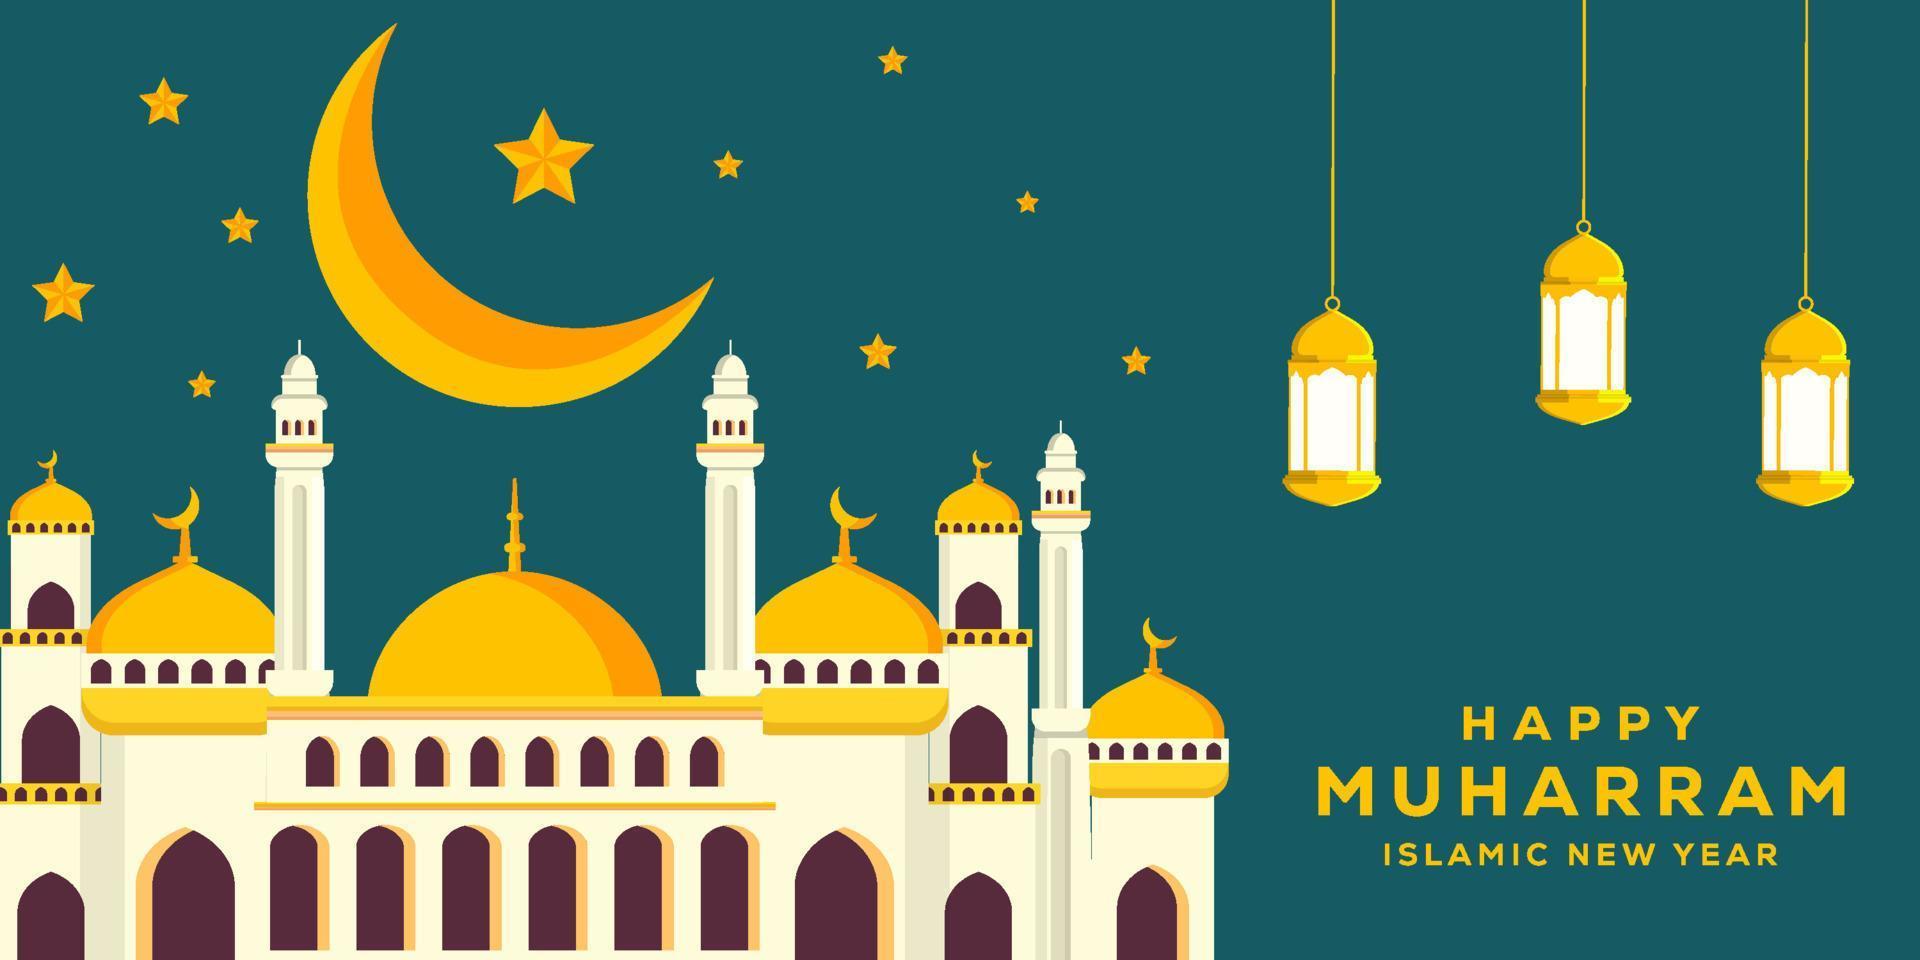 platt glad muharram och islamisk nyår bakgrundsillustration med moské, måne och stjärnor vektor